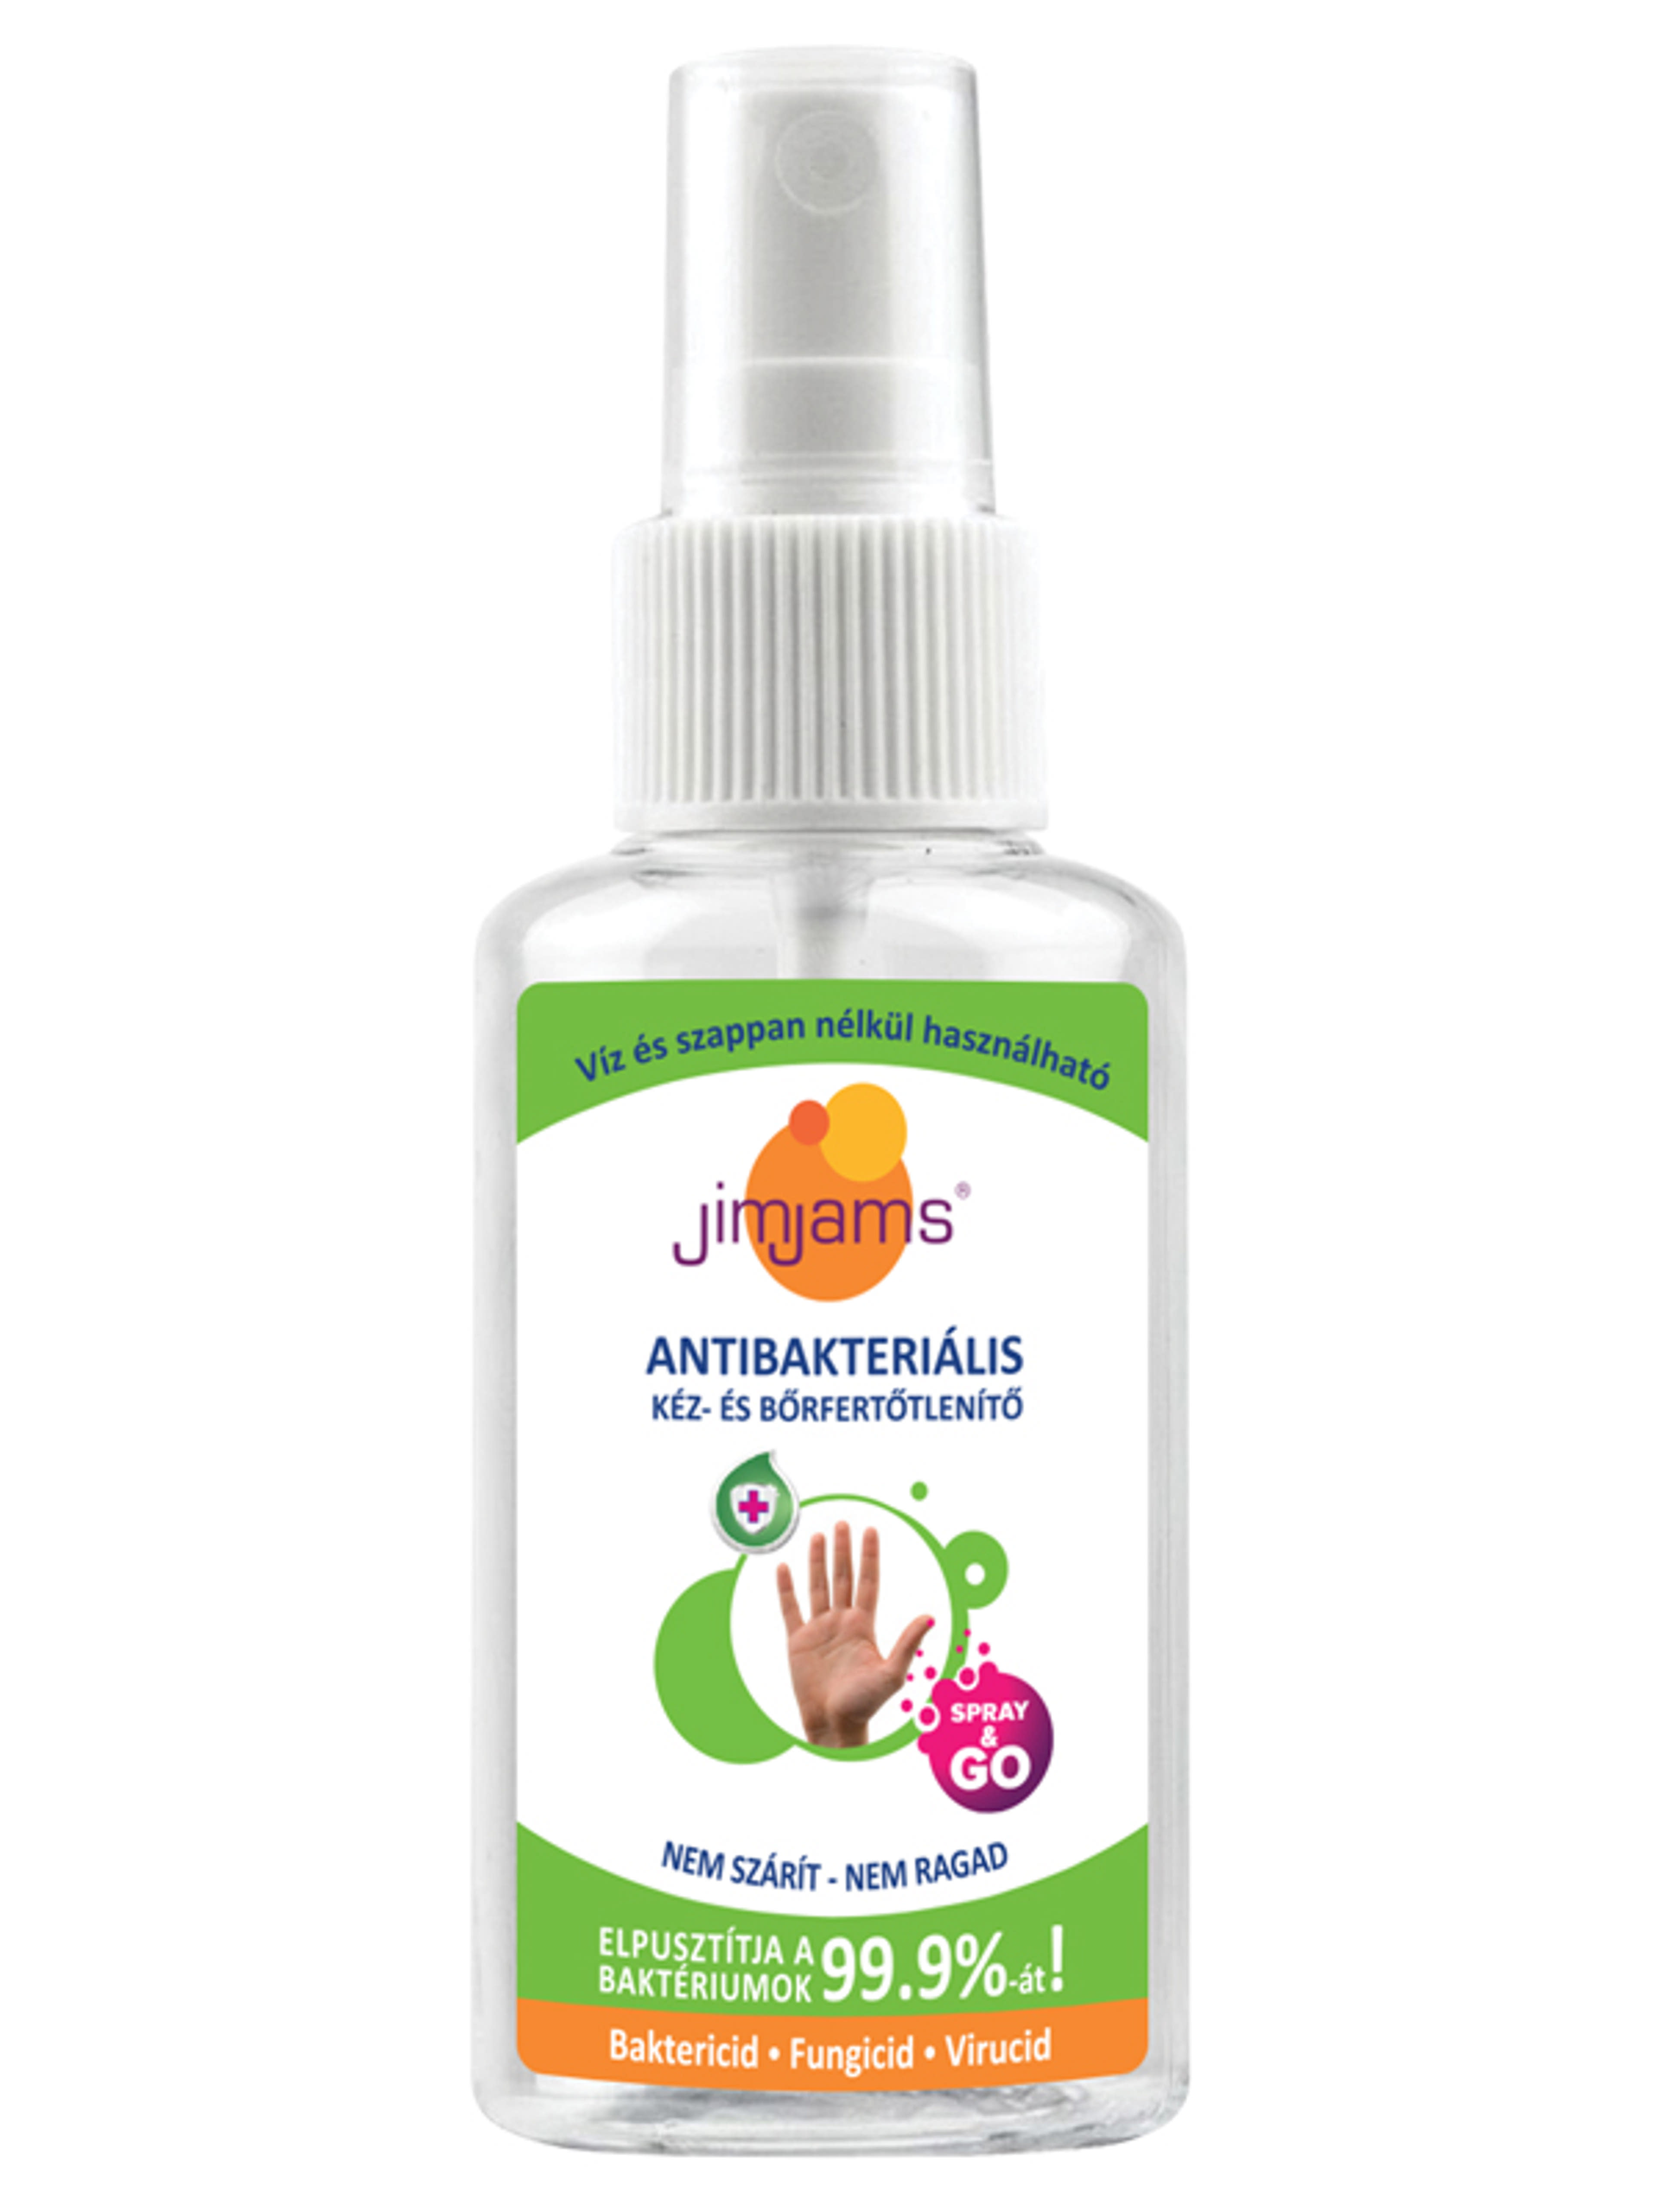 JimJams antibakteriális kéz és börfertőtlenítő Spray - 50 ml-1